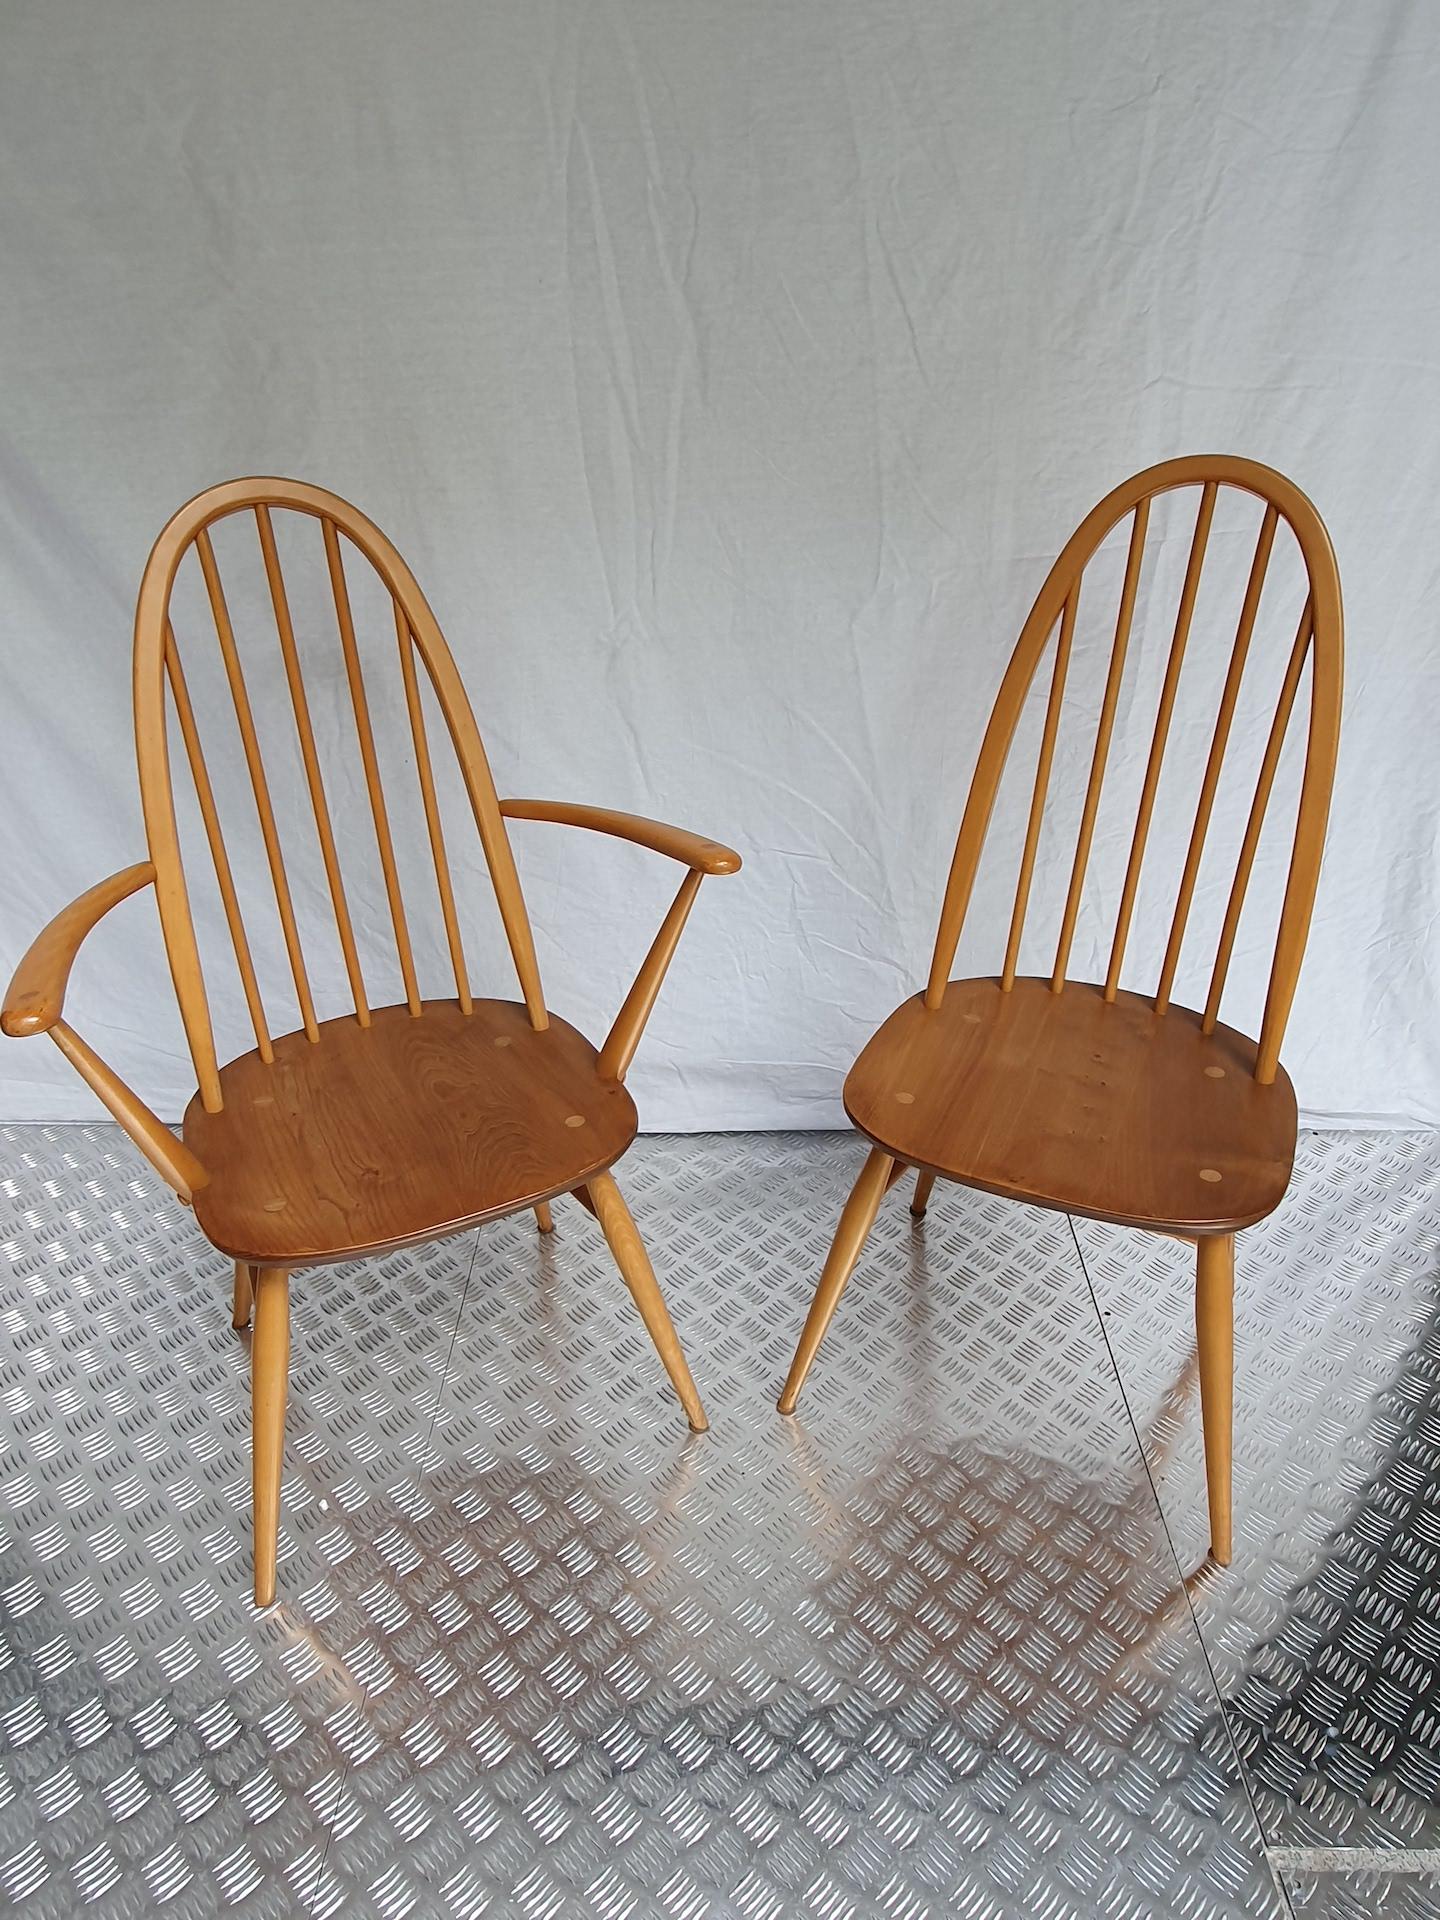 Paar Sessel und Windsor-Stuhl von Lucian Randolph Ercolani 
Ercol Ausgabe
um 1960
Ulme und Buche
Maße: 97 x 42 x 41 cm
In sehr gutem Zustand.